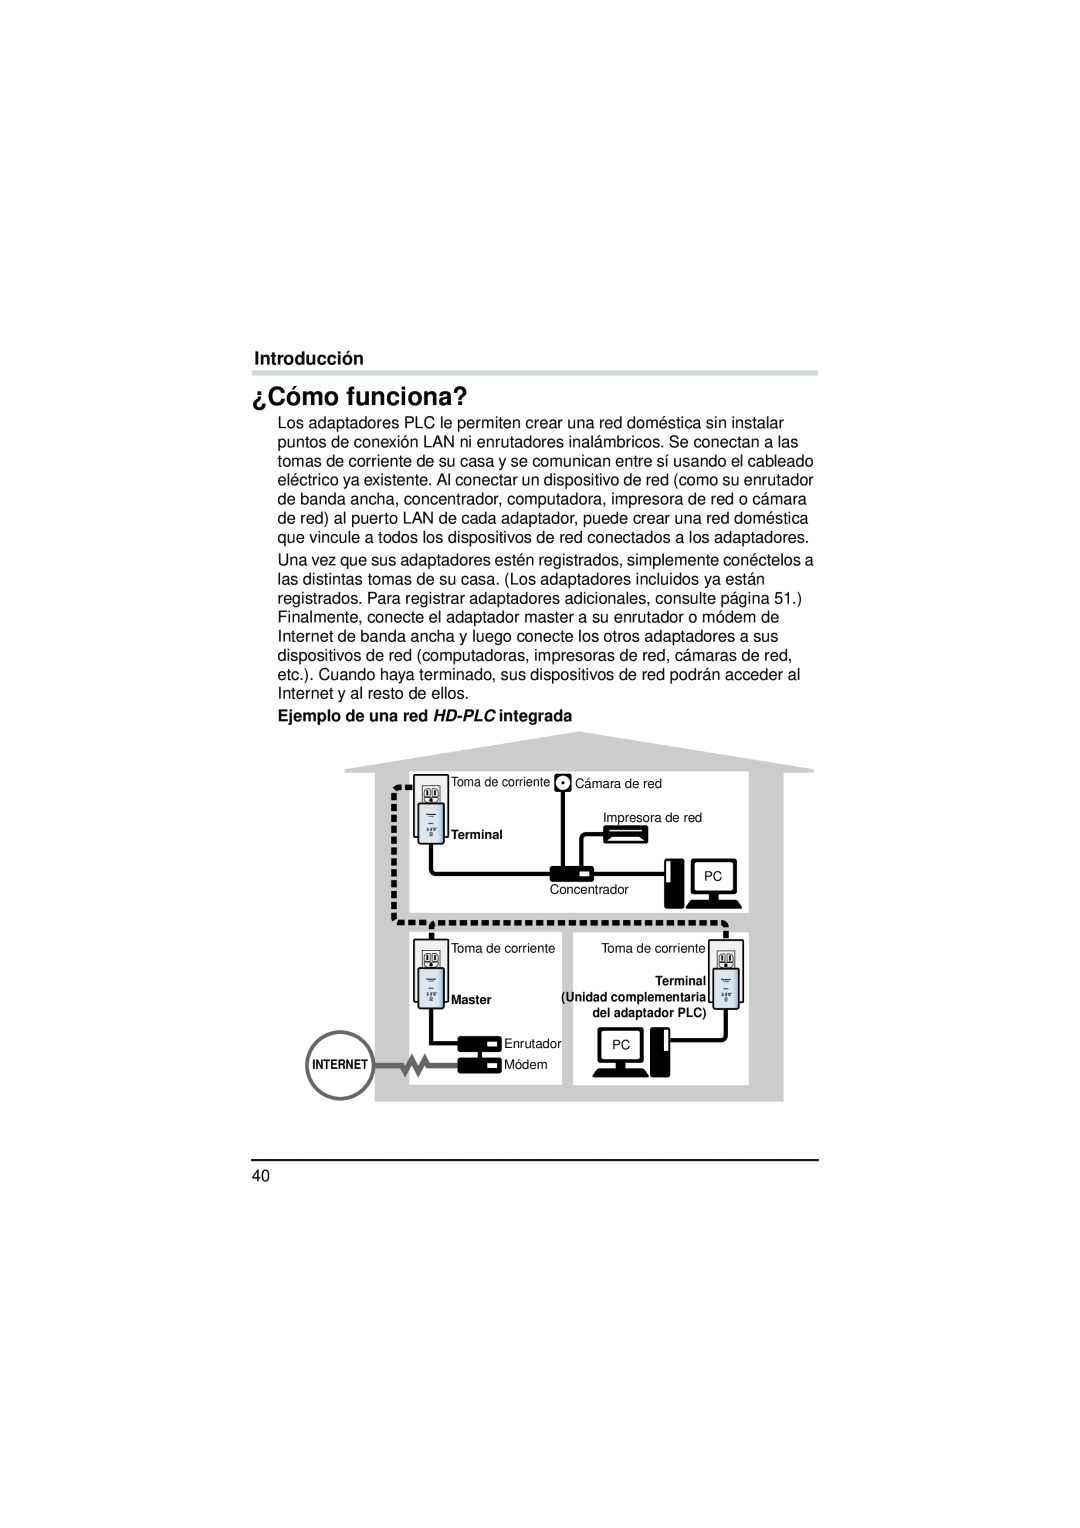 Panasonic BL-PA300KTA warranty ¿Cómo funciona?, Ejemplo de una red HD-PLC integrada, Introducción 